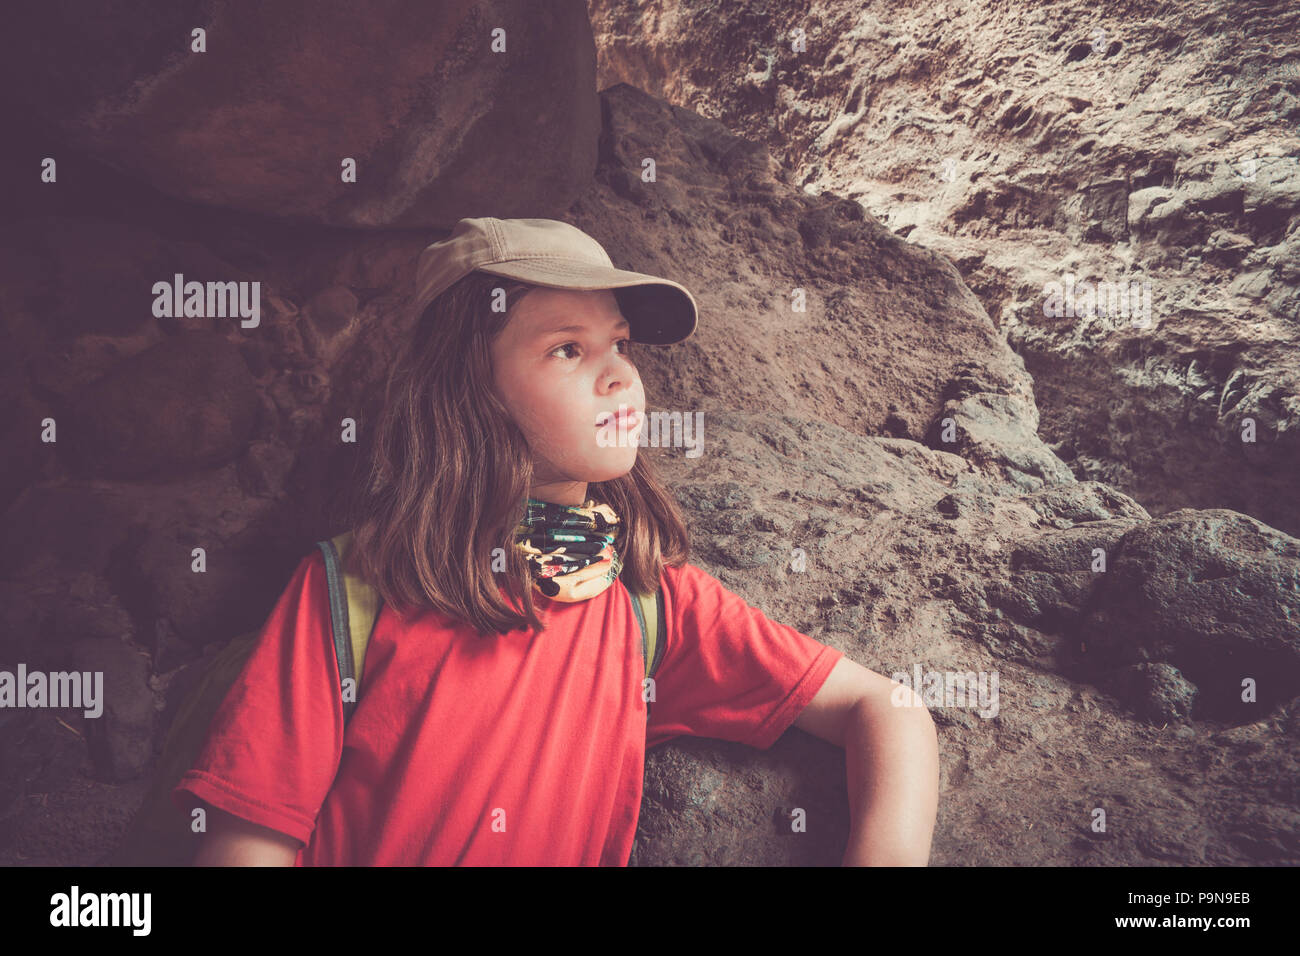 Ein Mädchen starrt nachdenklich in der Mitte einer langen Wanderung, geschützt unter einigen Felsen an einem Berghang. Sie trägt ein UV-Schal, Mütze, Sonnencreme. Stockfoto